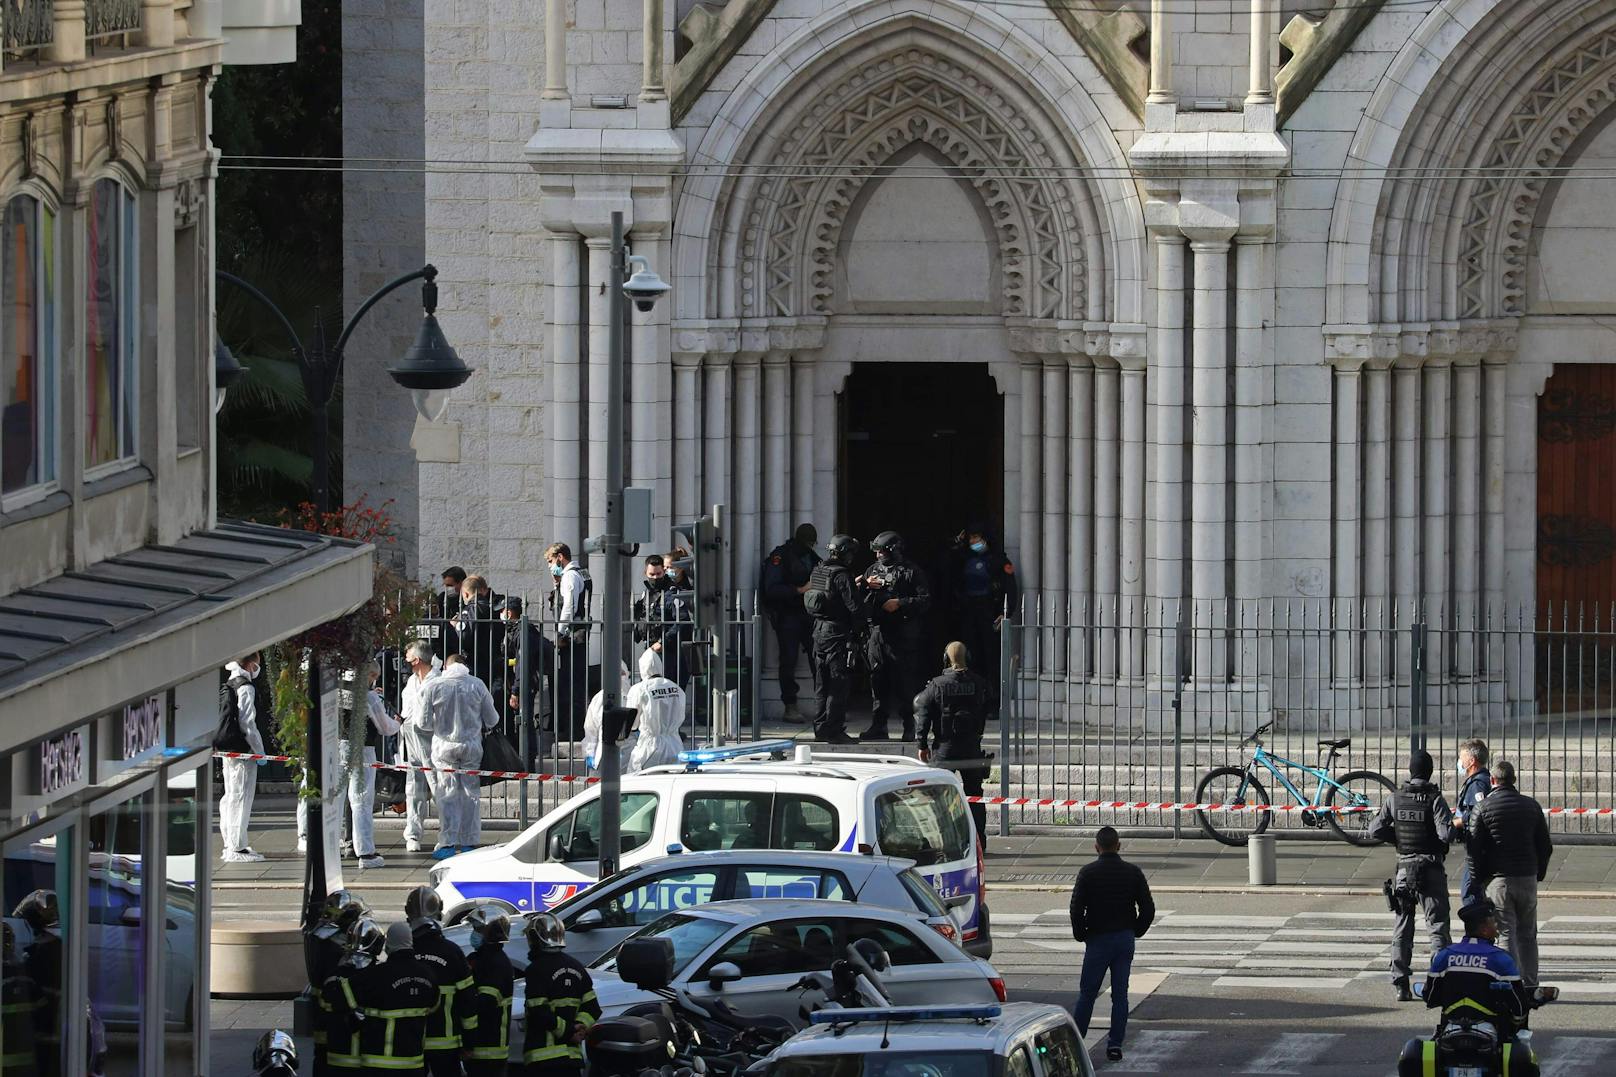 Der Vorfall habe sich um zirka 9 Uhr in der Nähe der Kirche Notre-Dame ereignet, berichtete der Nachrichtensender BFMTV am Donnerstag.